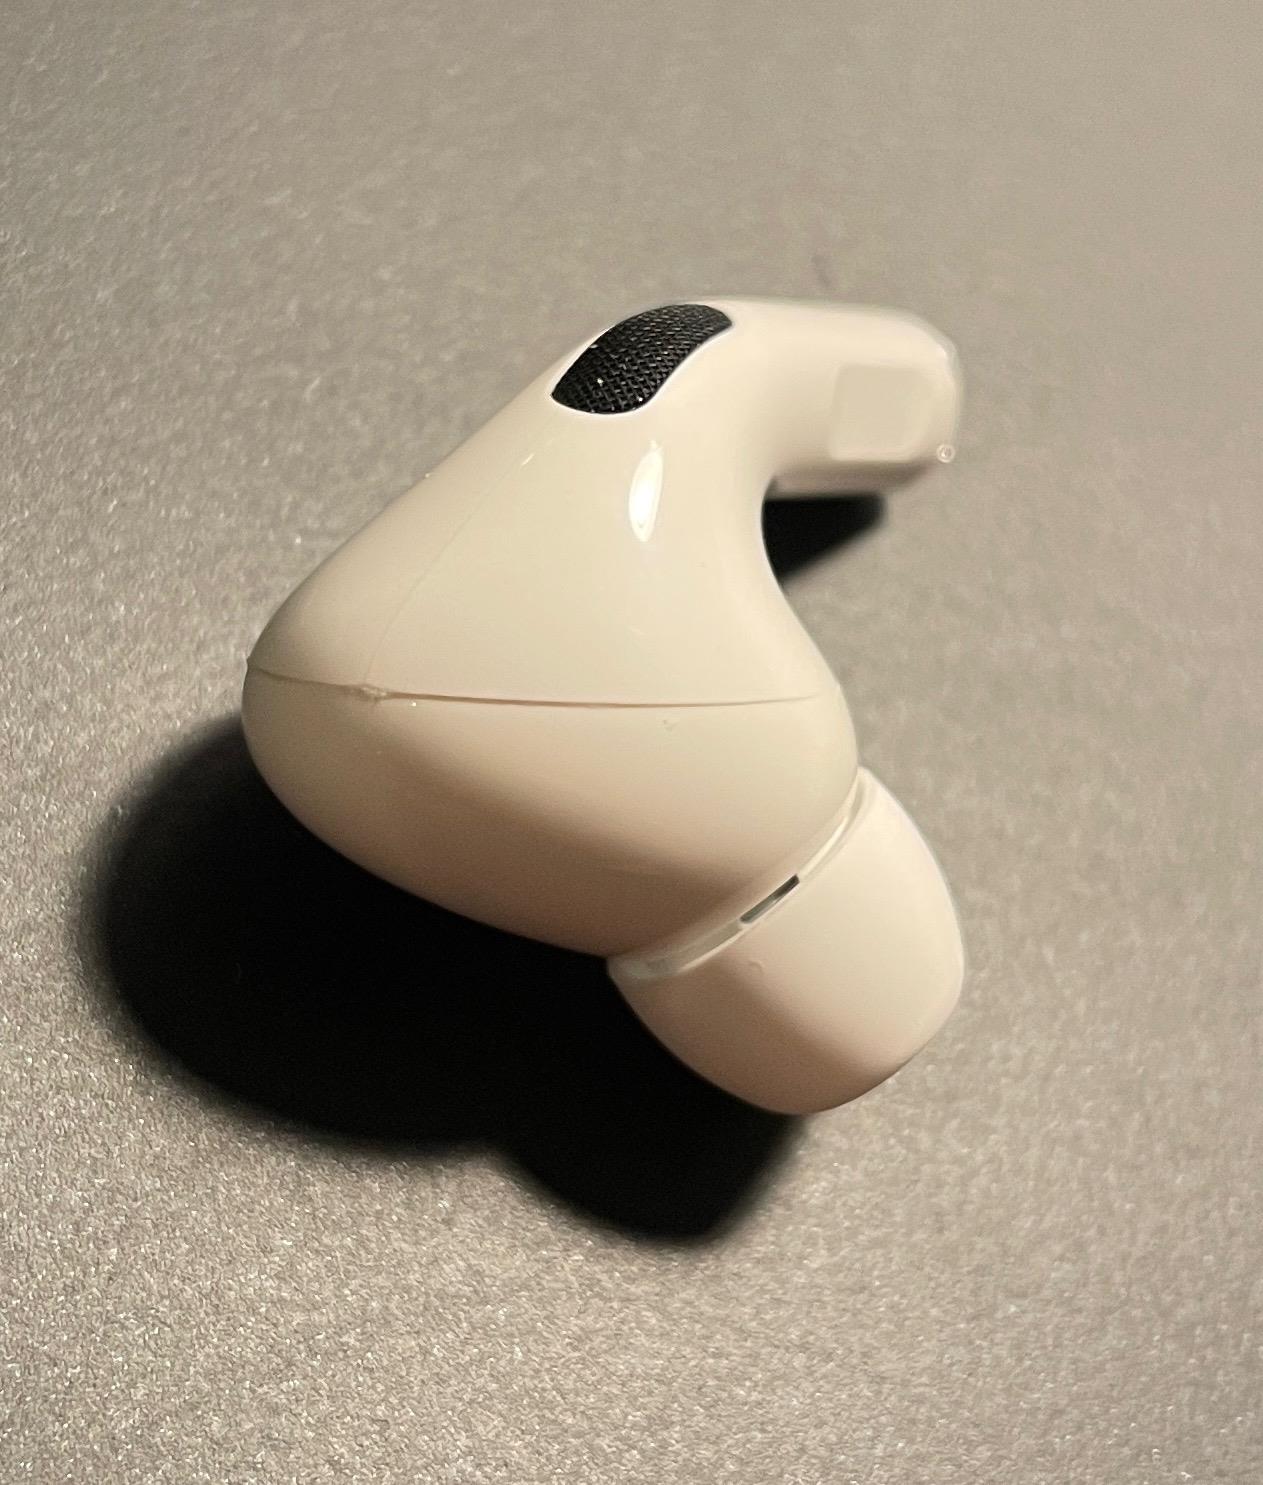 Słuchawki Apple AirPods Pro biały (MLWK3ZM/A) etui ładujące 